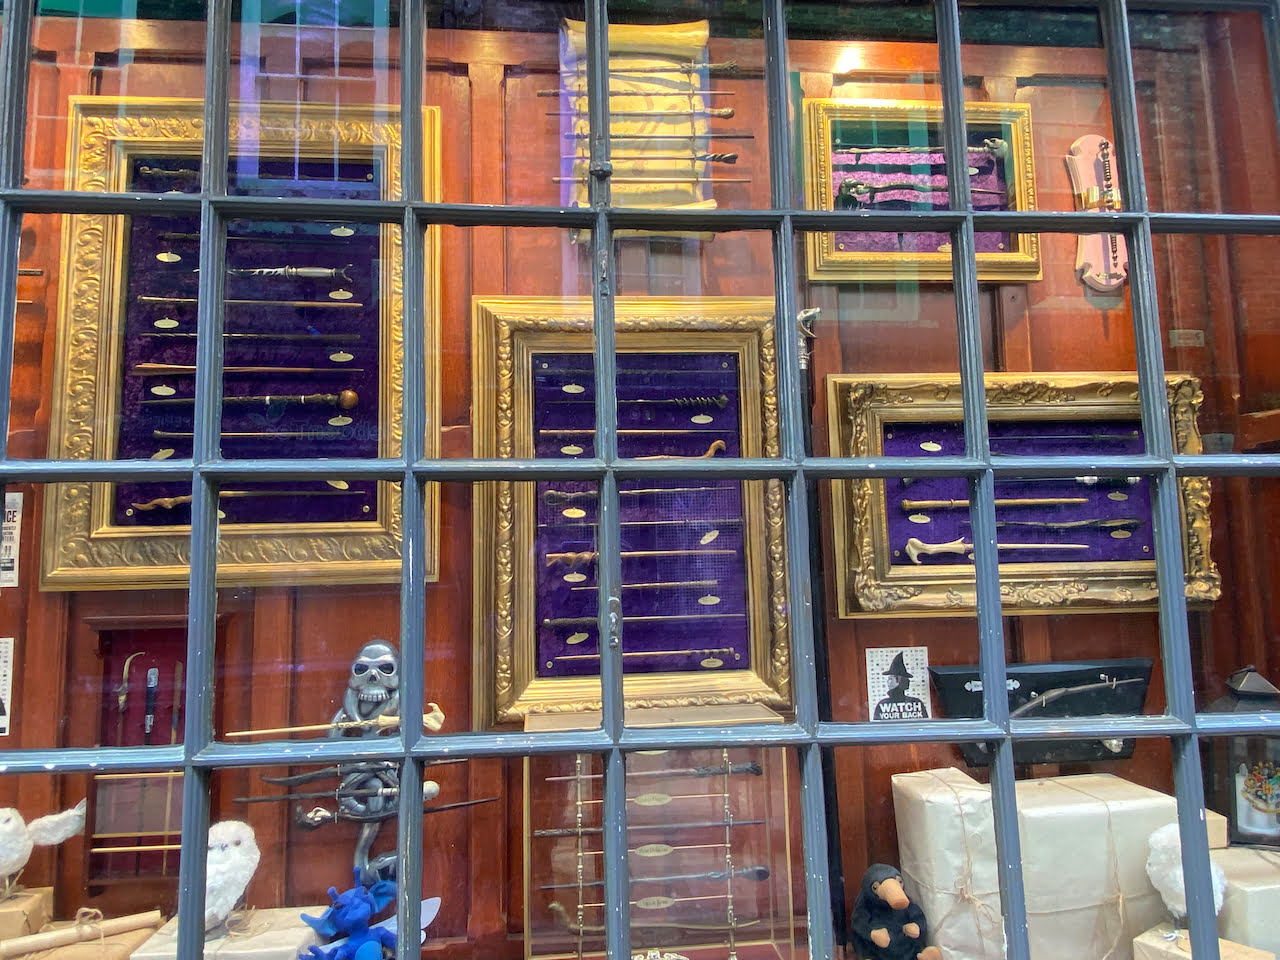 store window showing magic wands